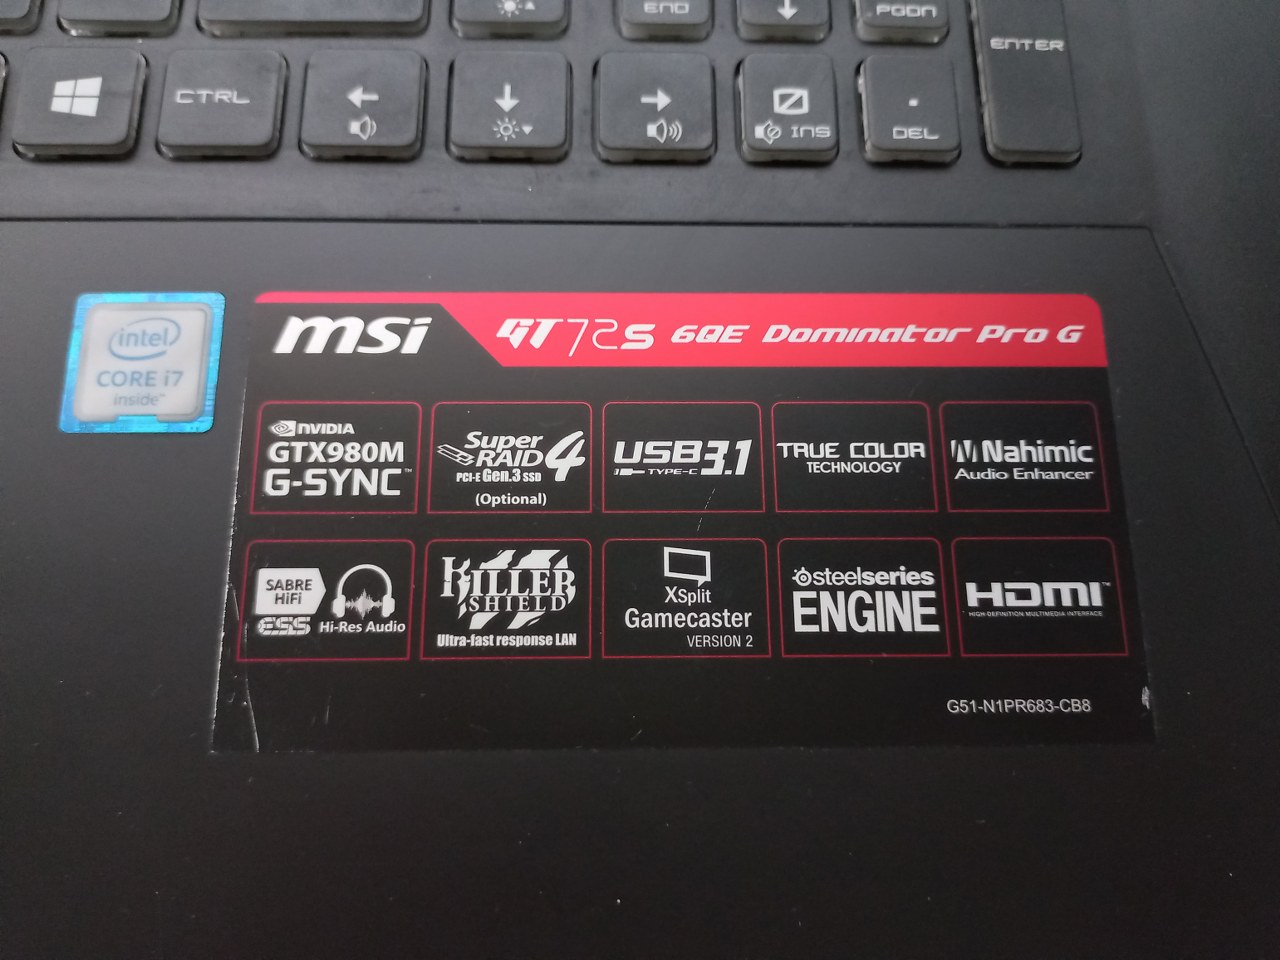 GT72S 6QE Laptop MSI GT72S 6QE Dominator Pro G i7-6820HK 2.7 Ghz 48GB RAM GTX 980 8GB 256SSD 1TB HDD WIN 10